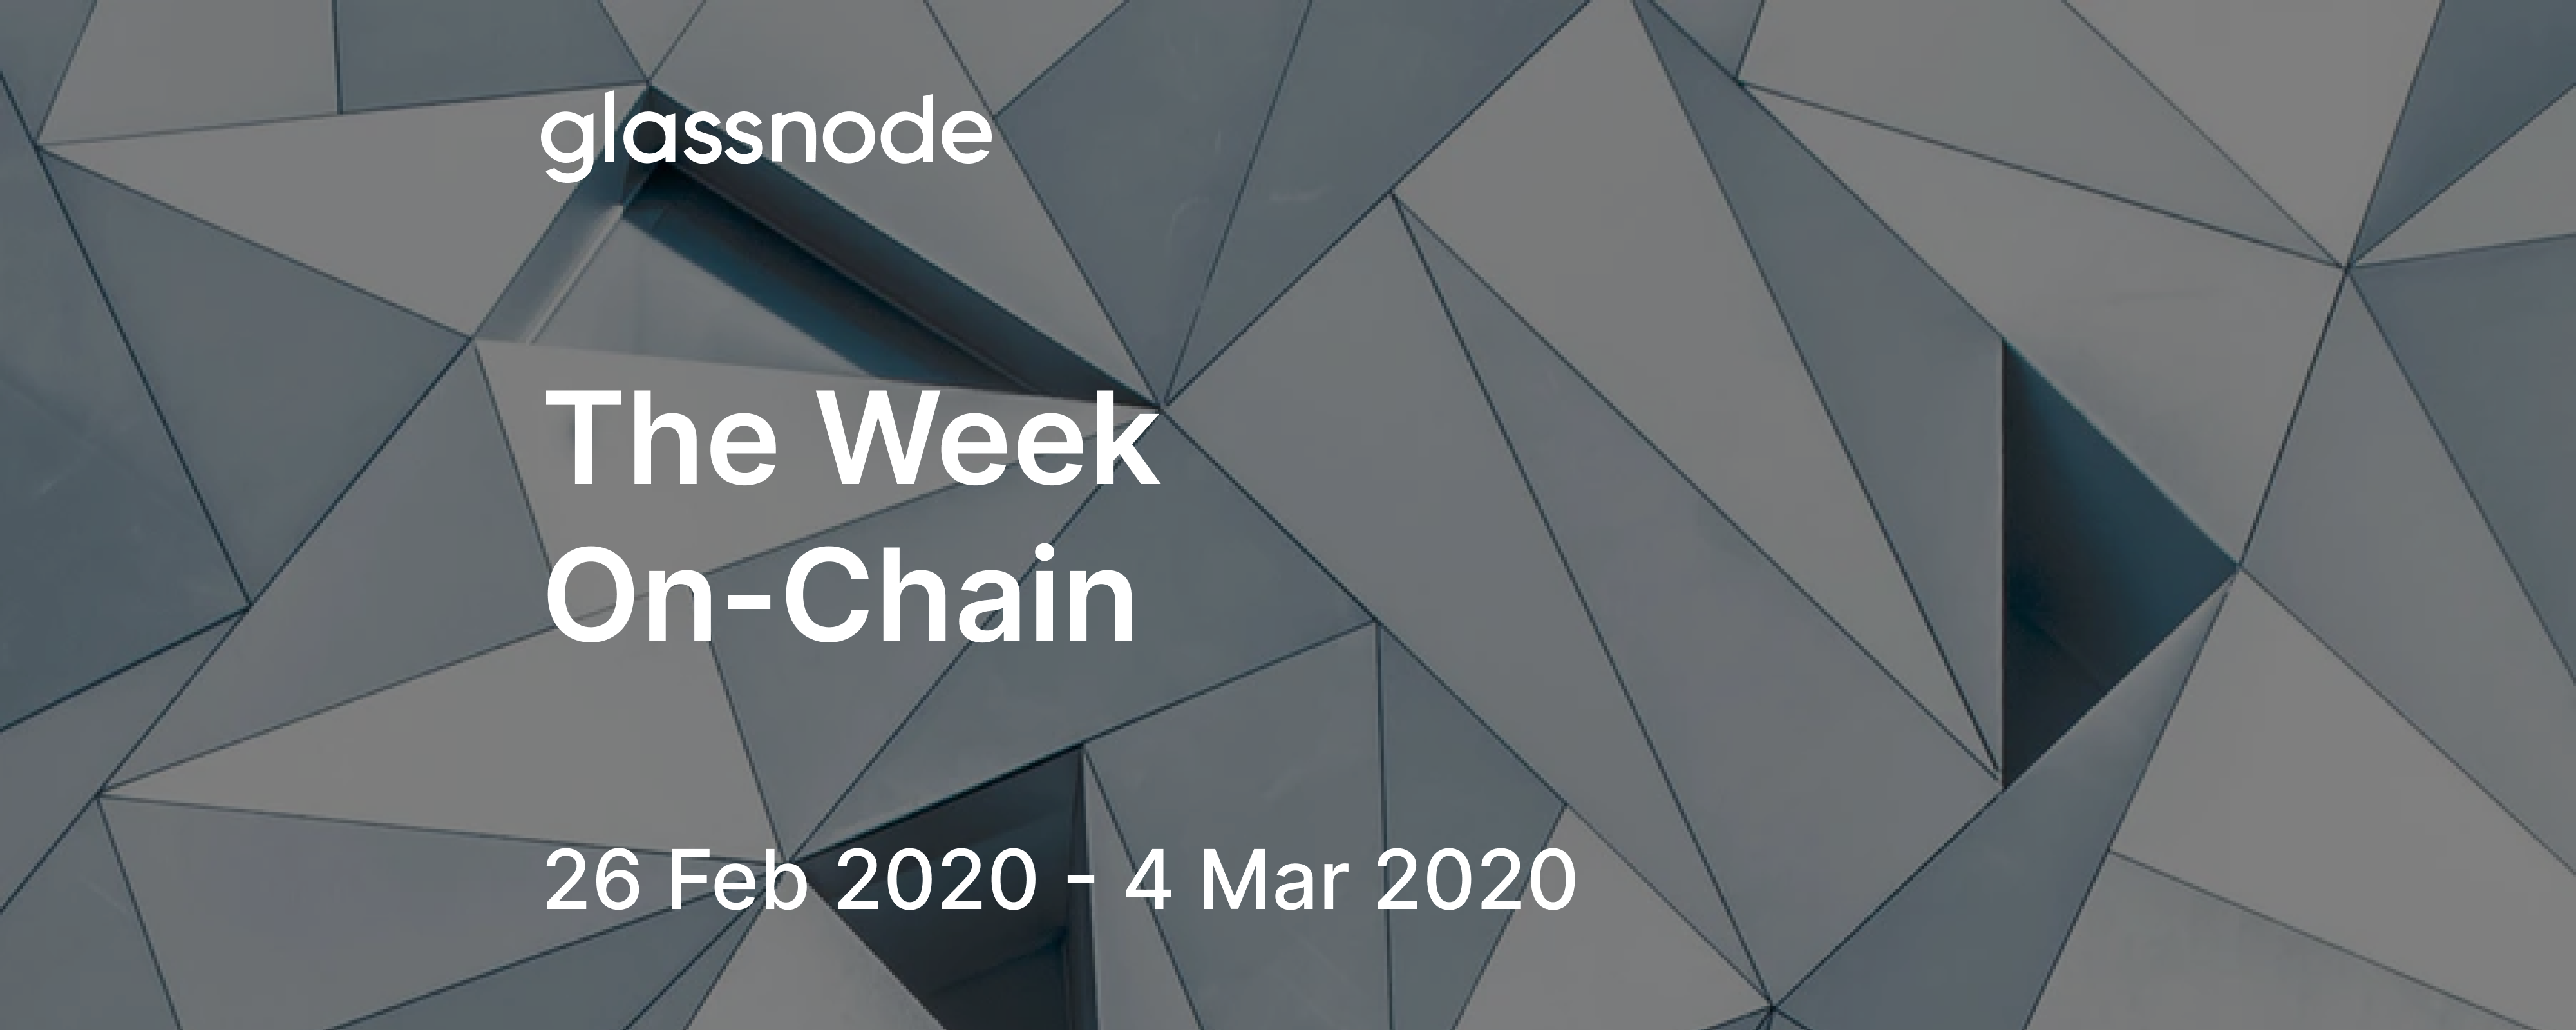 The Week On-Chain (26 Feb 2020 - 4 Mar 2020)